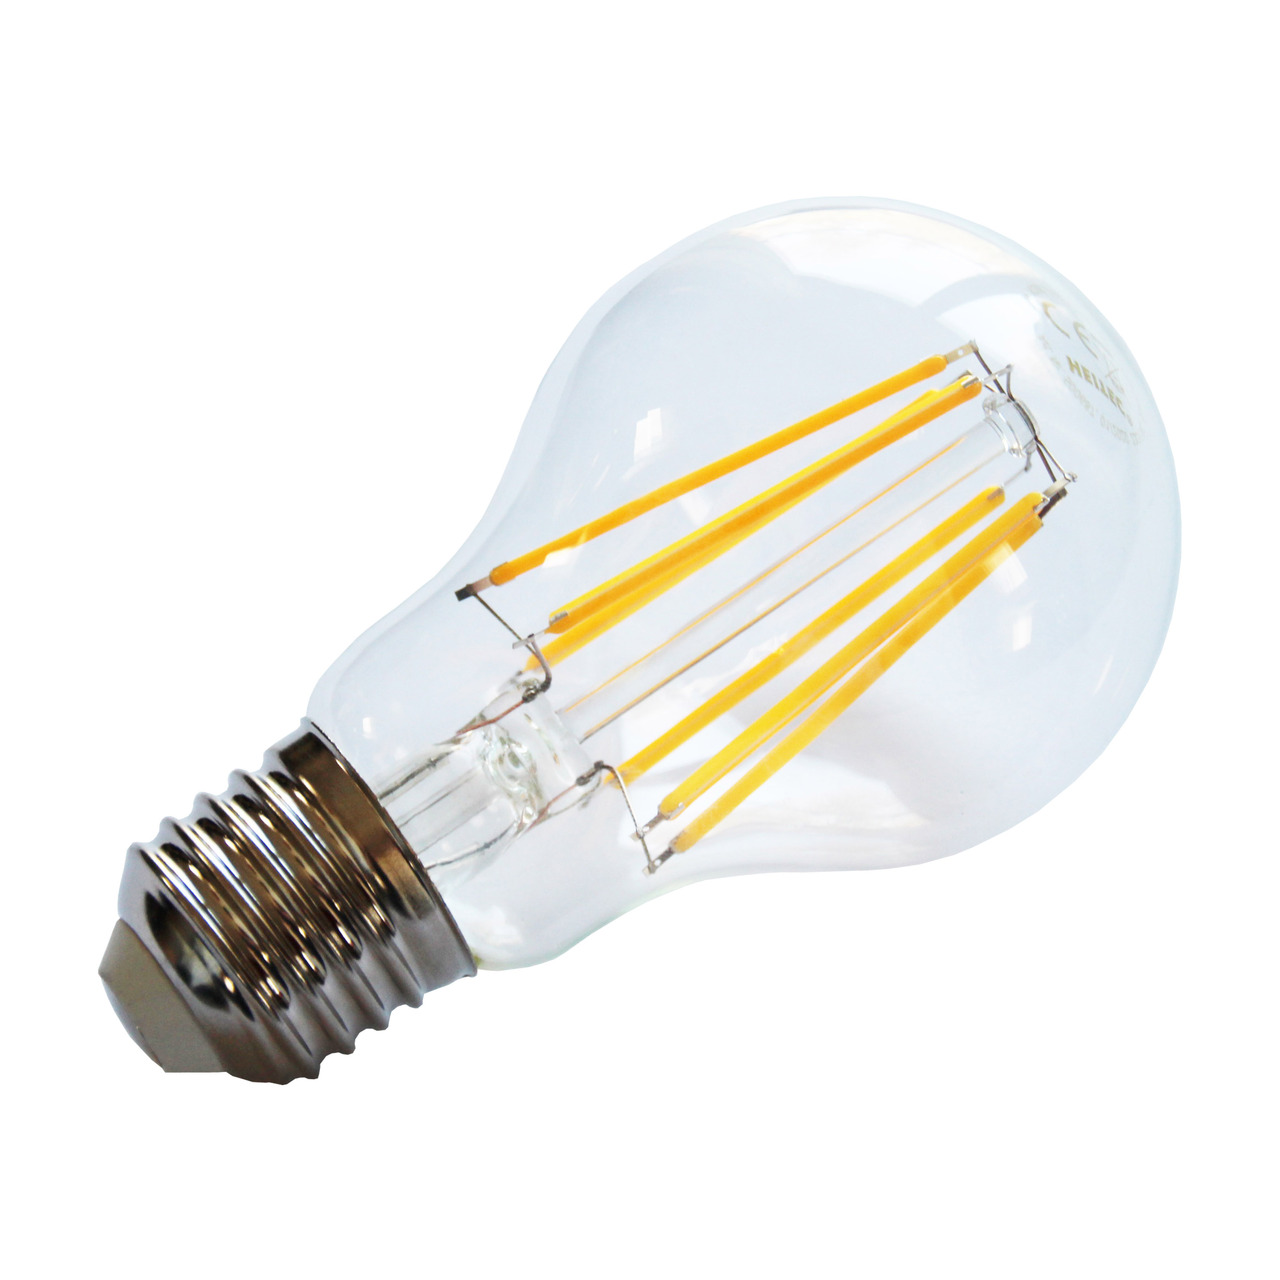 HEITEC 12-W-Filament-LED-Lampe A60- E27- 1050 lm- warmweiss- klar